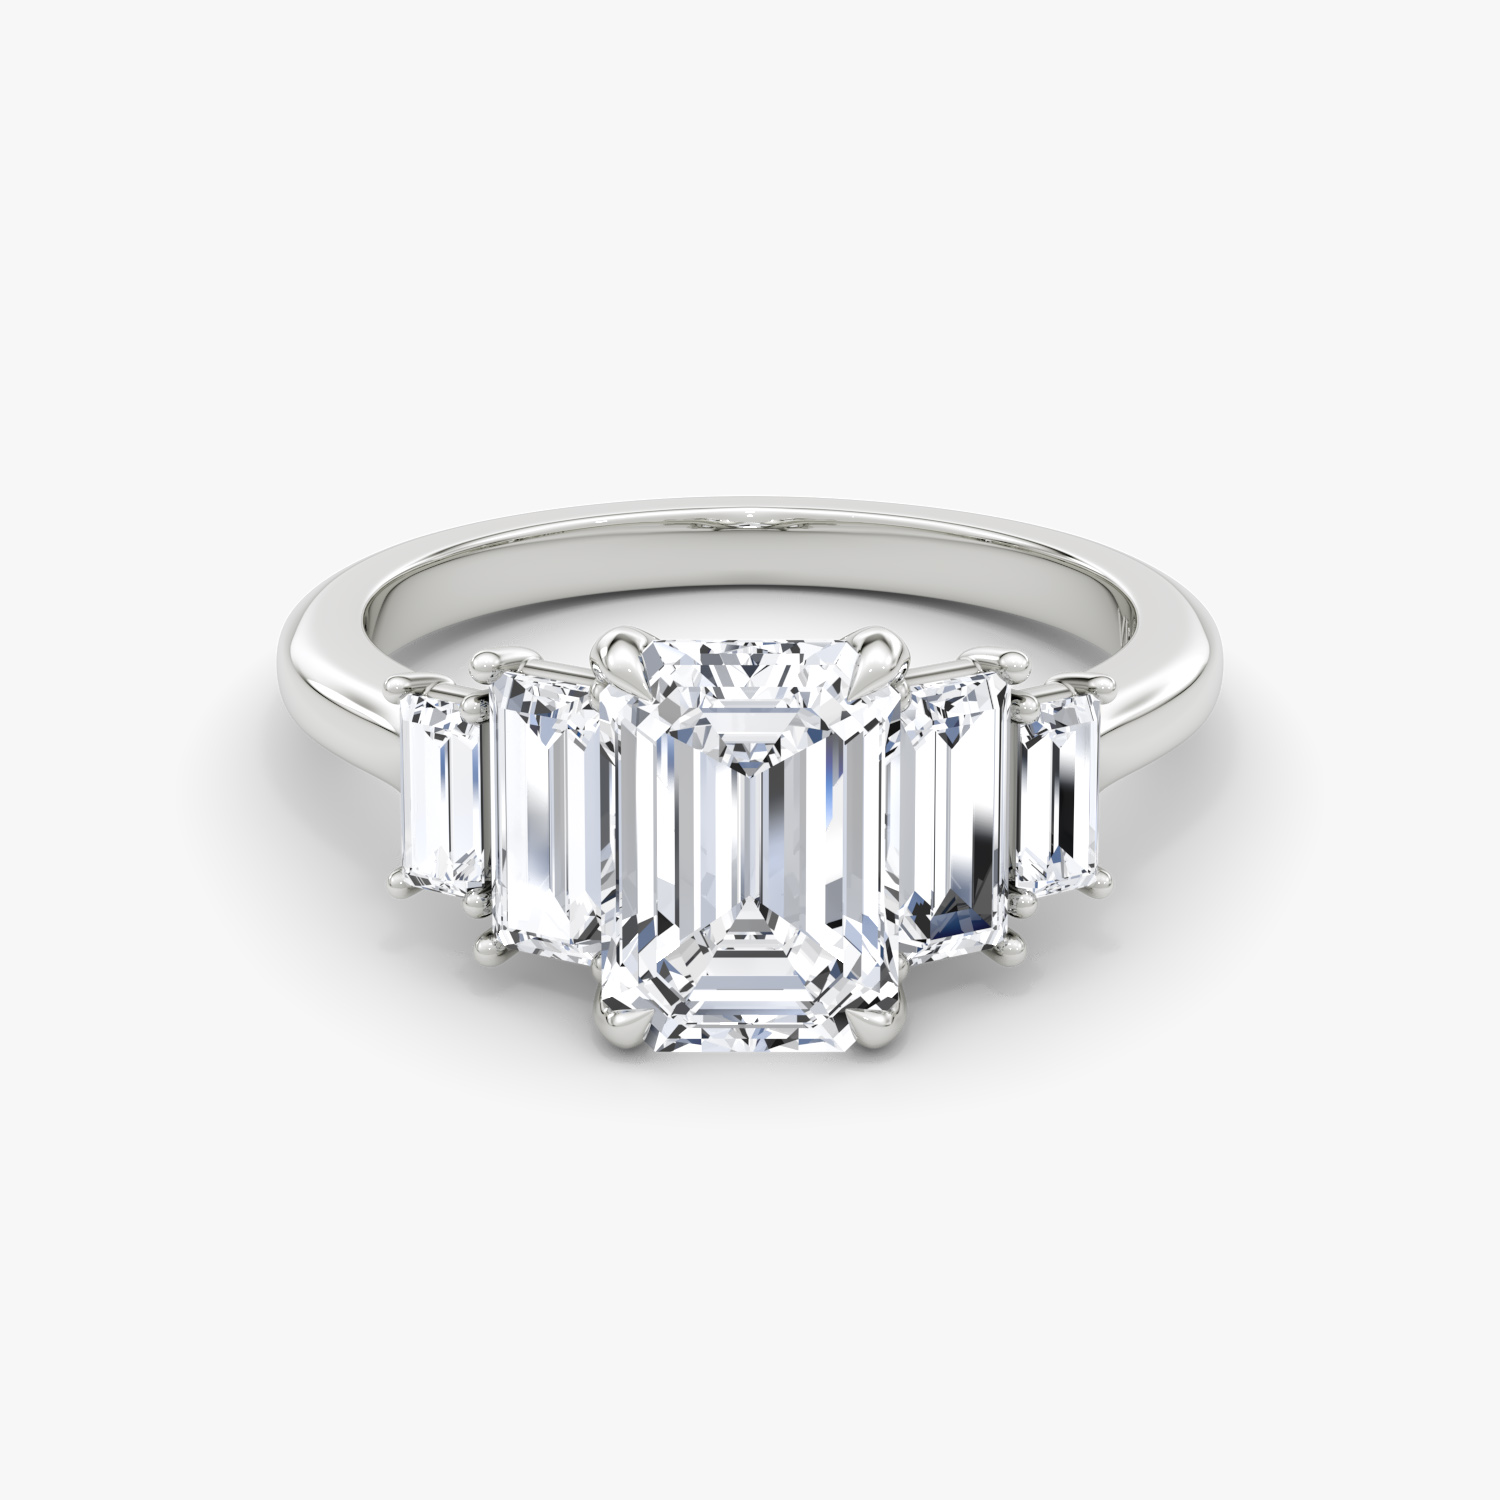 Ingram Jewelers - Jewelry - Hermitage, TN - WeddingWire